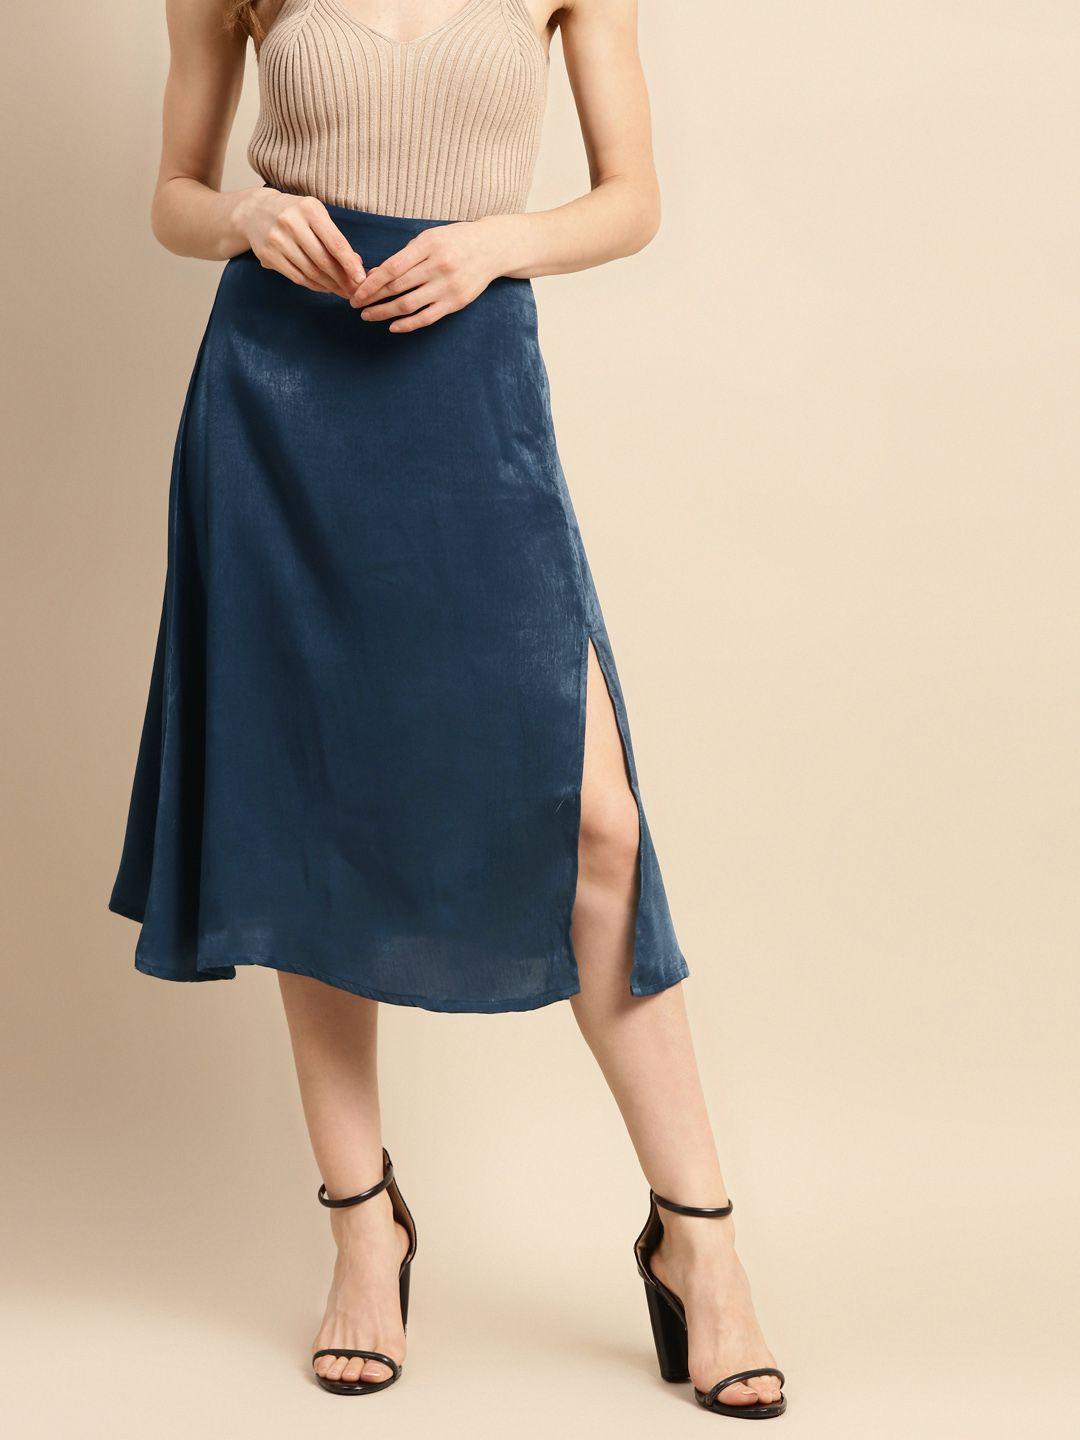 woowzerz women teal blue solid a-line skirt